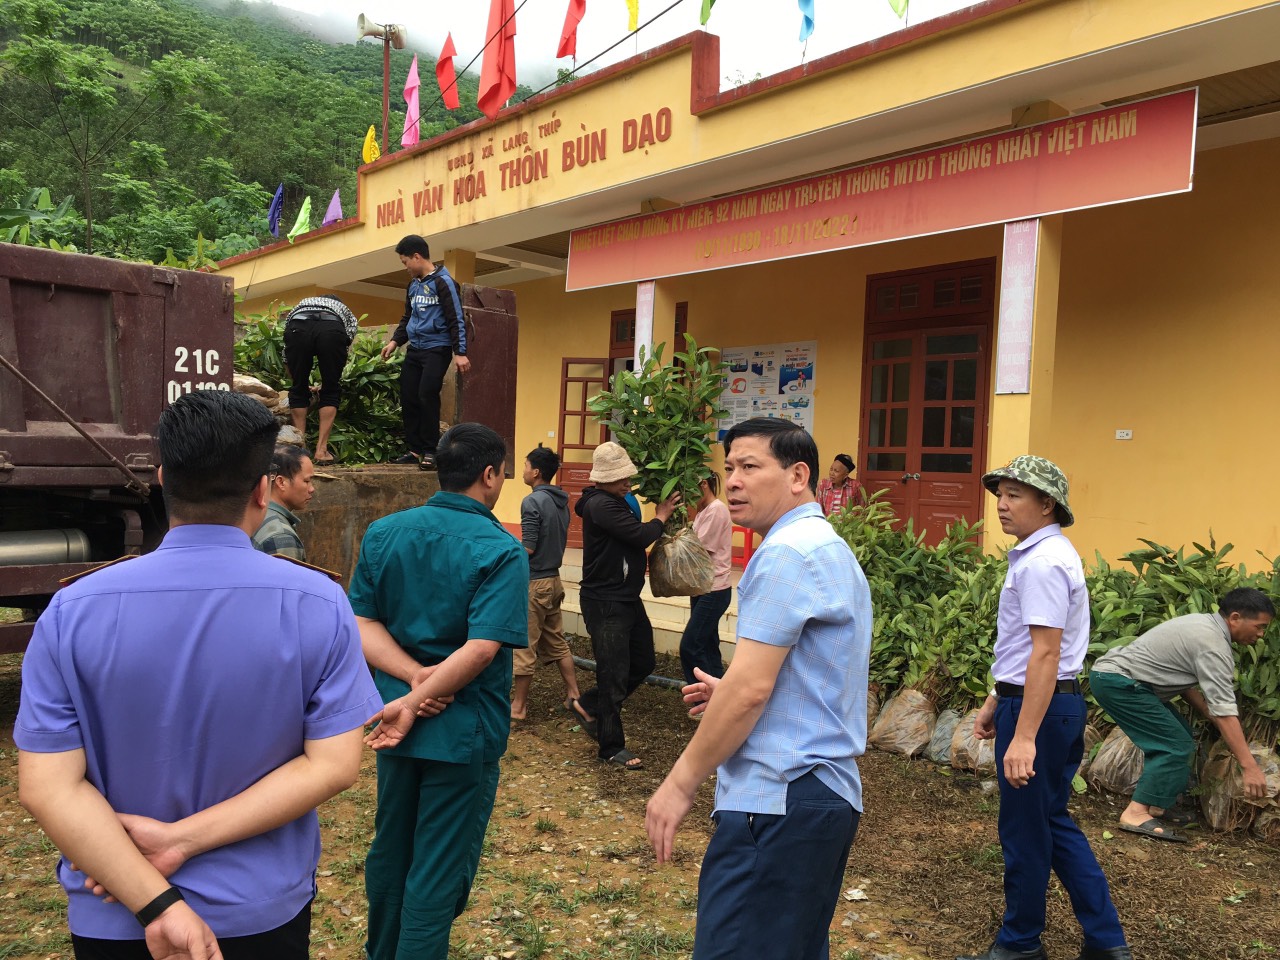 Chi cục Thi hành án dân sự huyện Văn Yên giúp đỡ hộ nghèo tại thôn Bùn Dạo xã Lang Thíp phát triển kinh tế